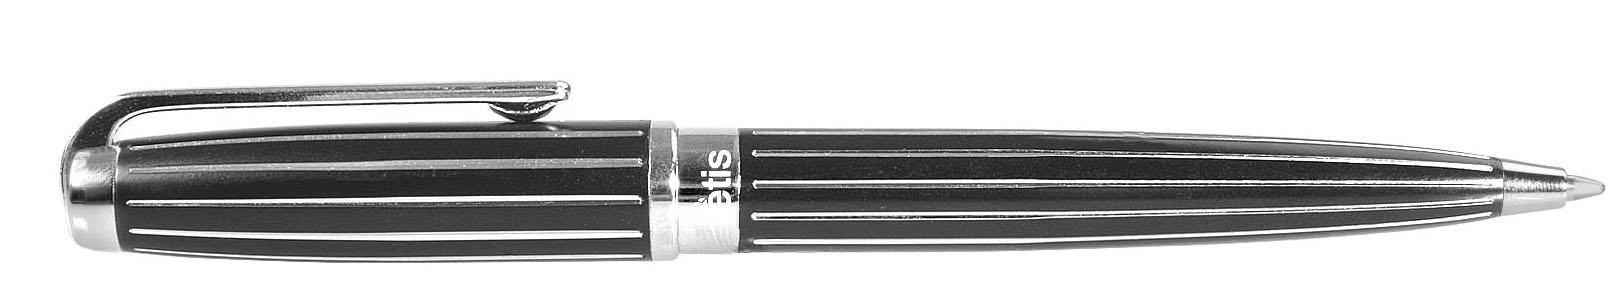 tetis-e.długopis kd330-vv czarny